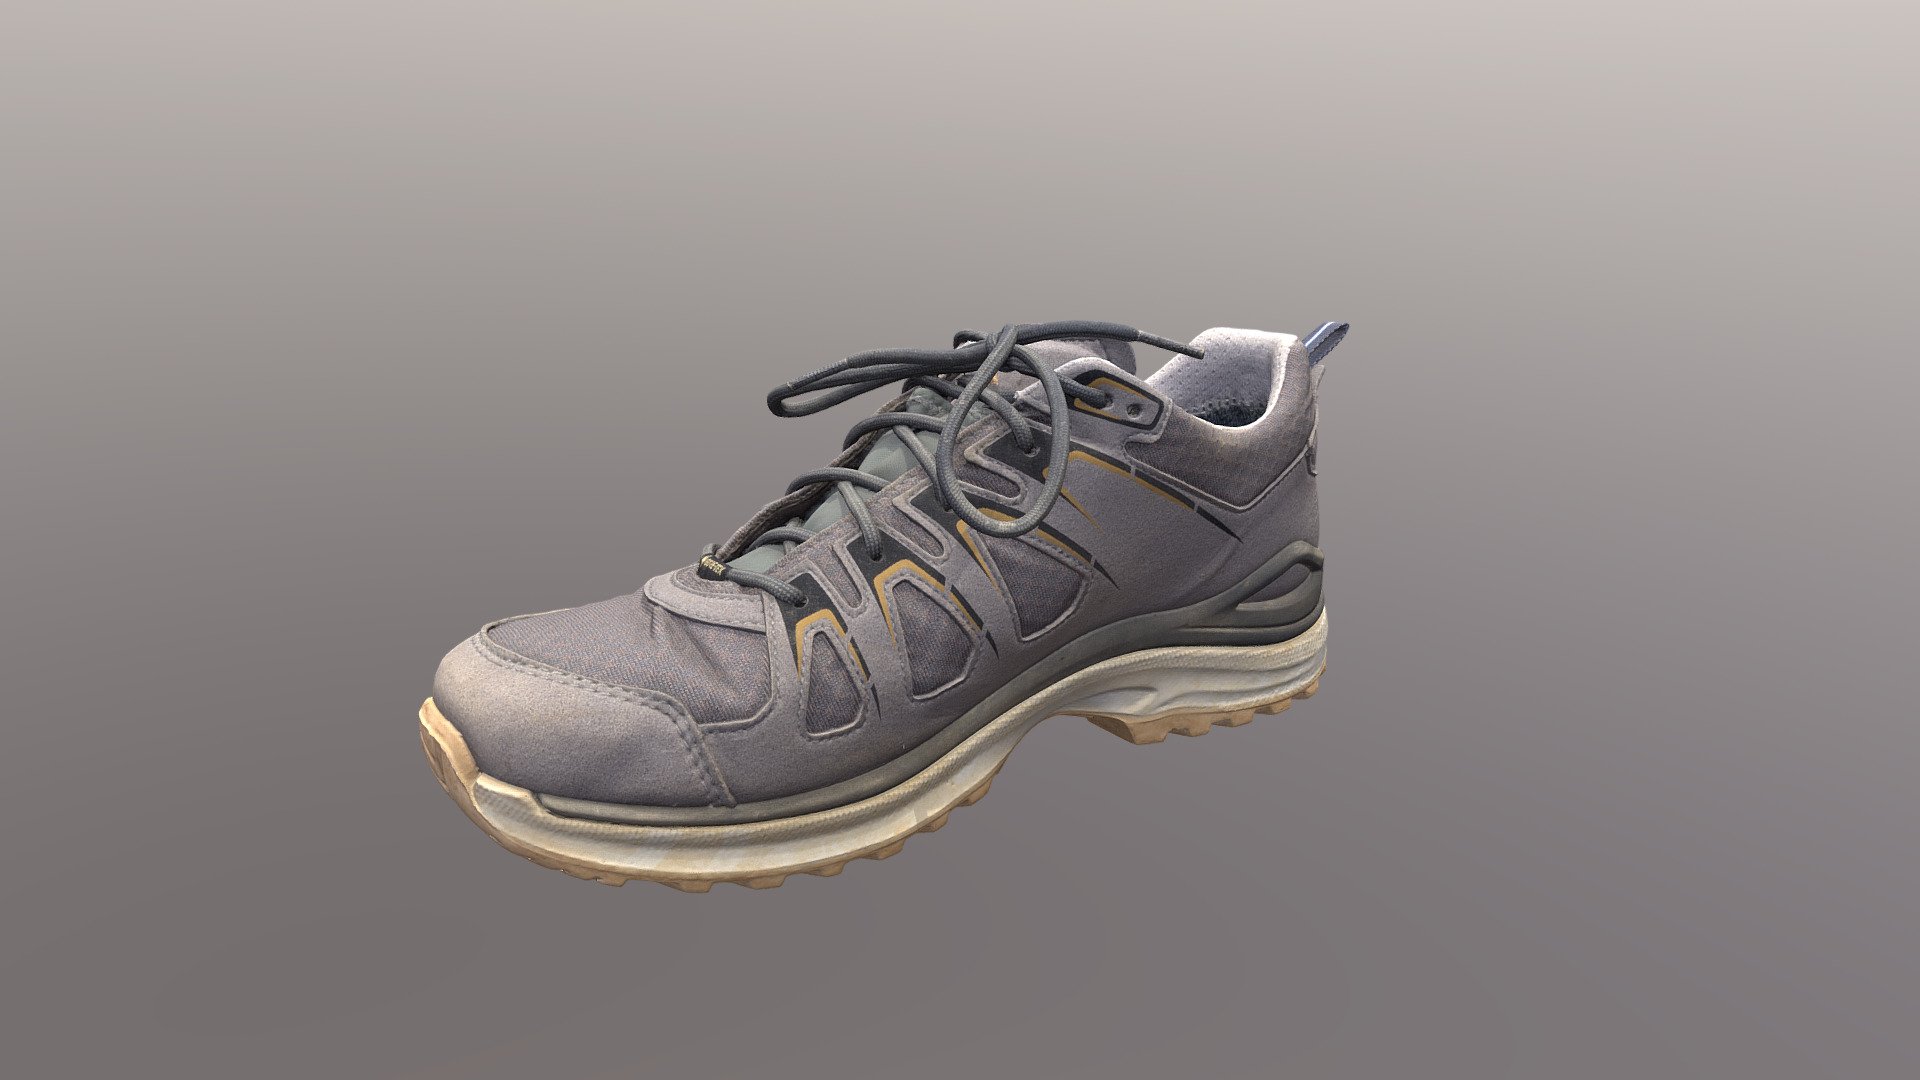 Lowa_boots - 3D model by maximus.ua [4009b33] - Sketchfab